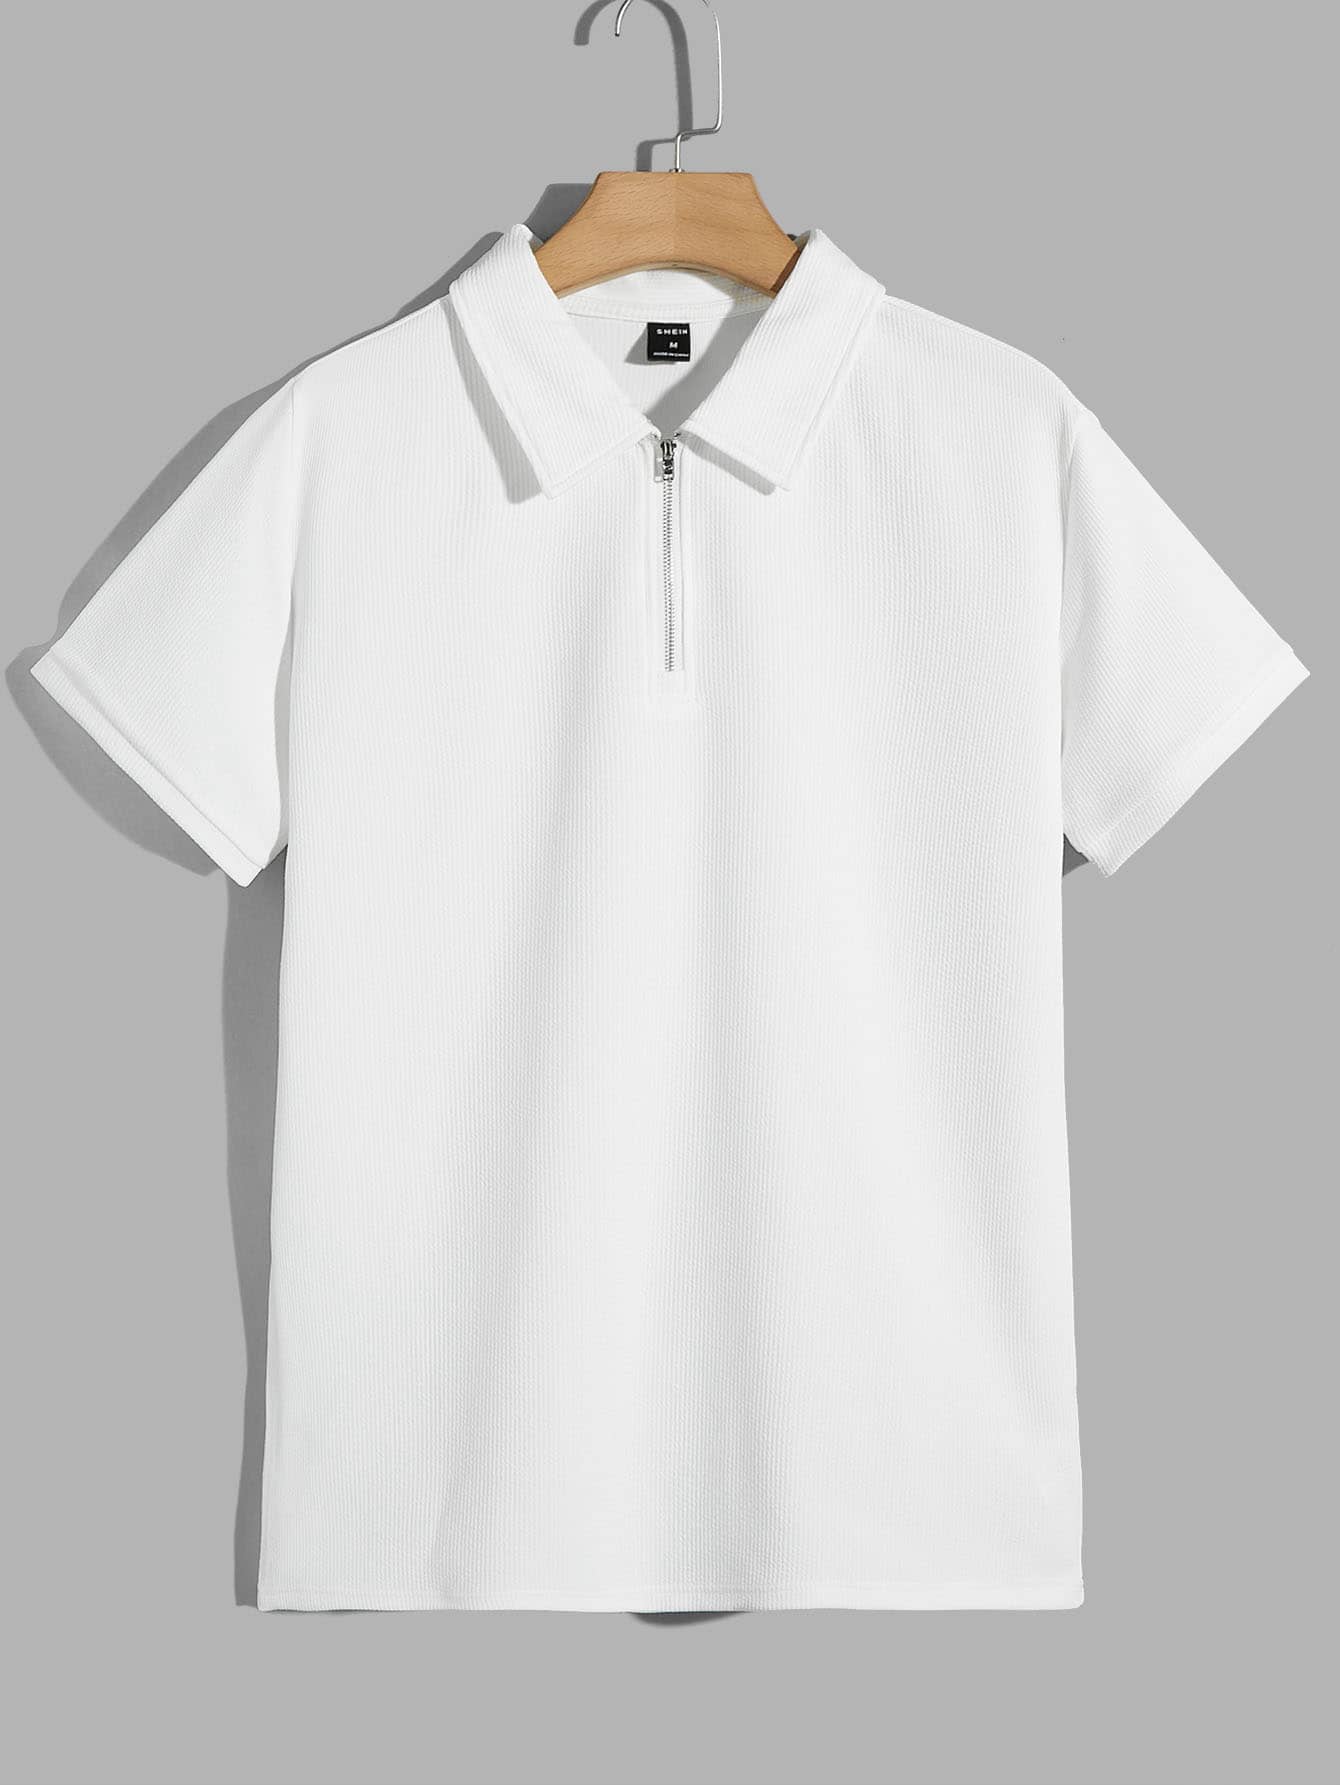 цена Мужская однотонная рубашка-поло с короткими рукавами Manfinity Homme, белый